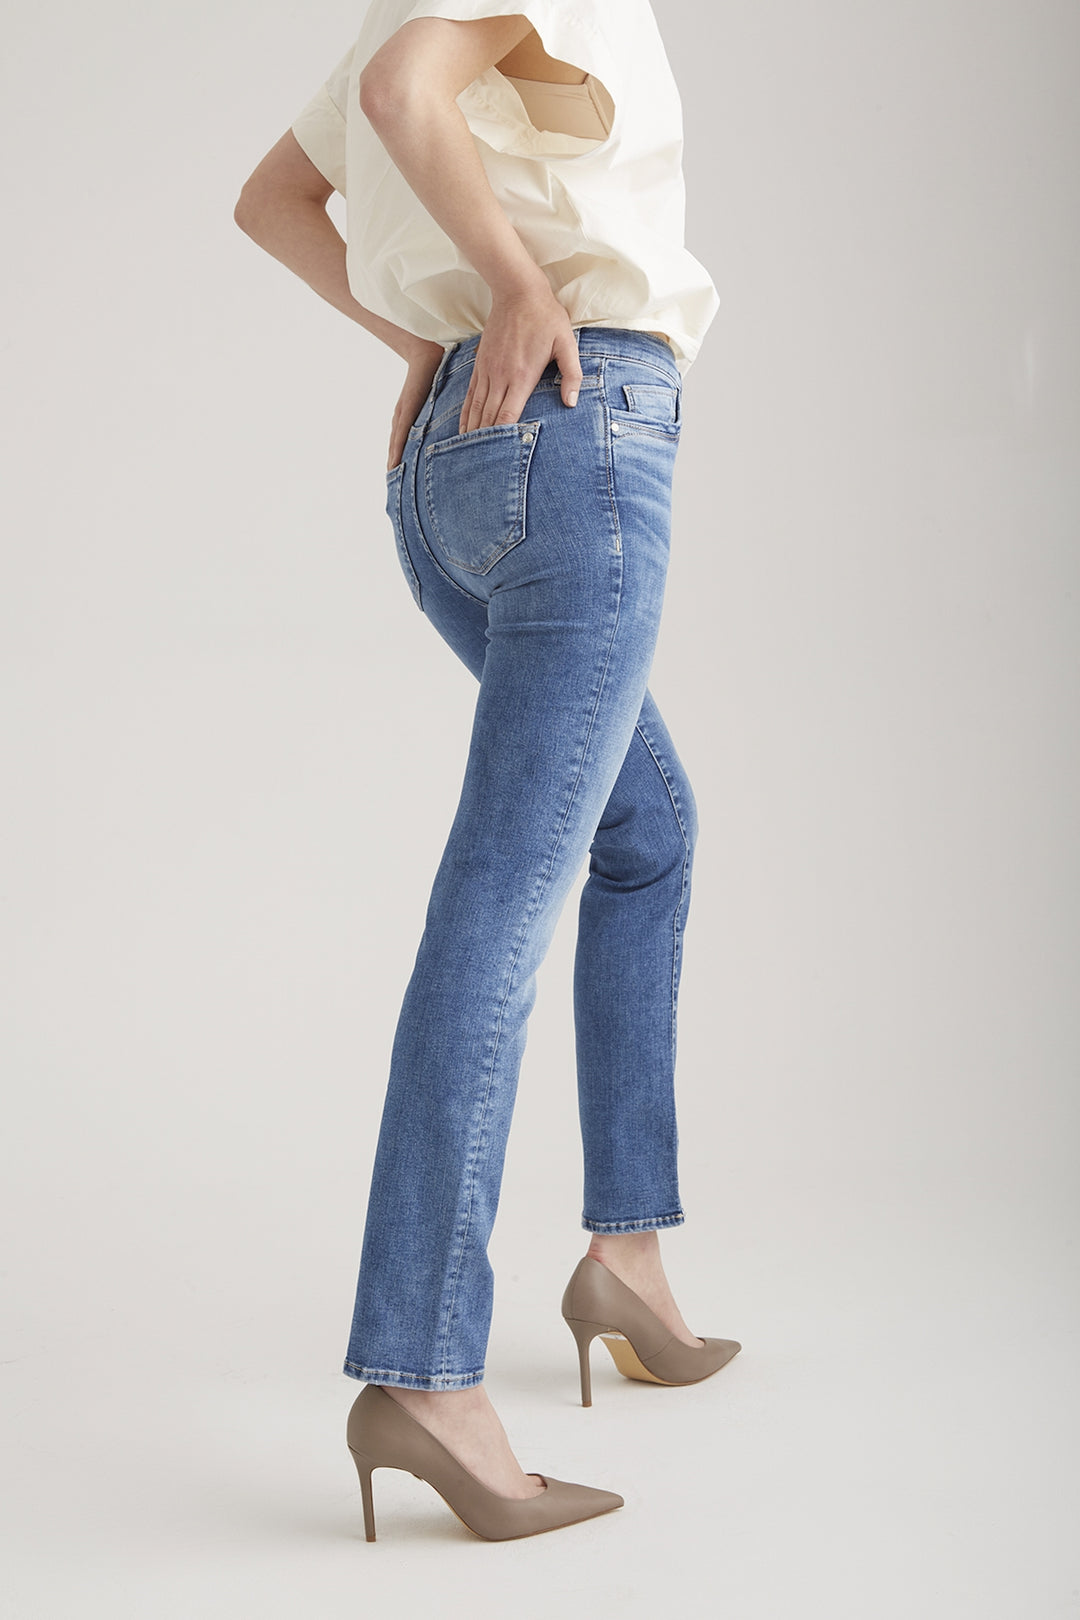 COJ - Hannah - Dames Regular-fit Jeans - Medium Blue